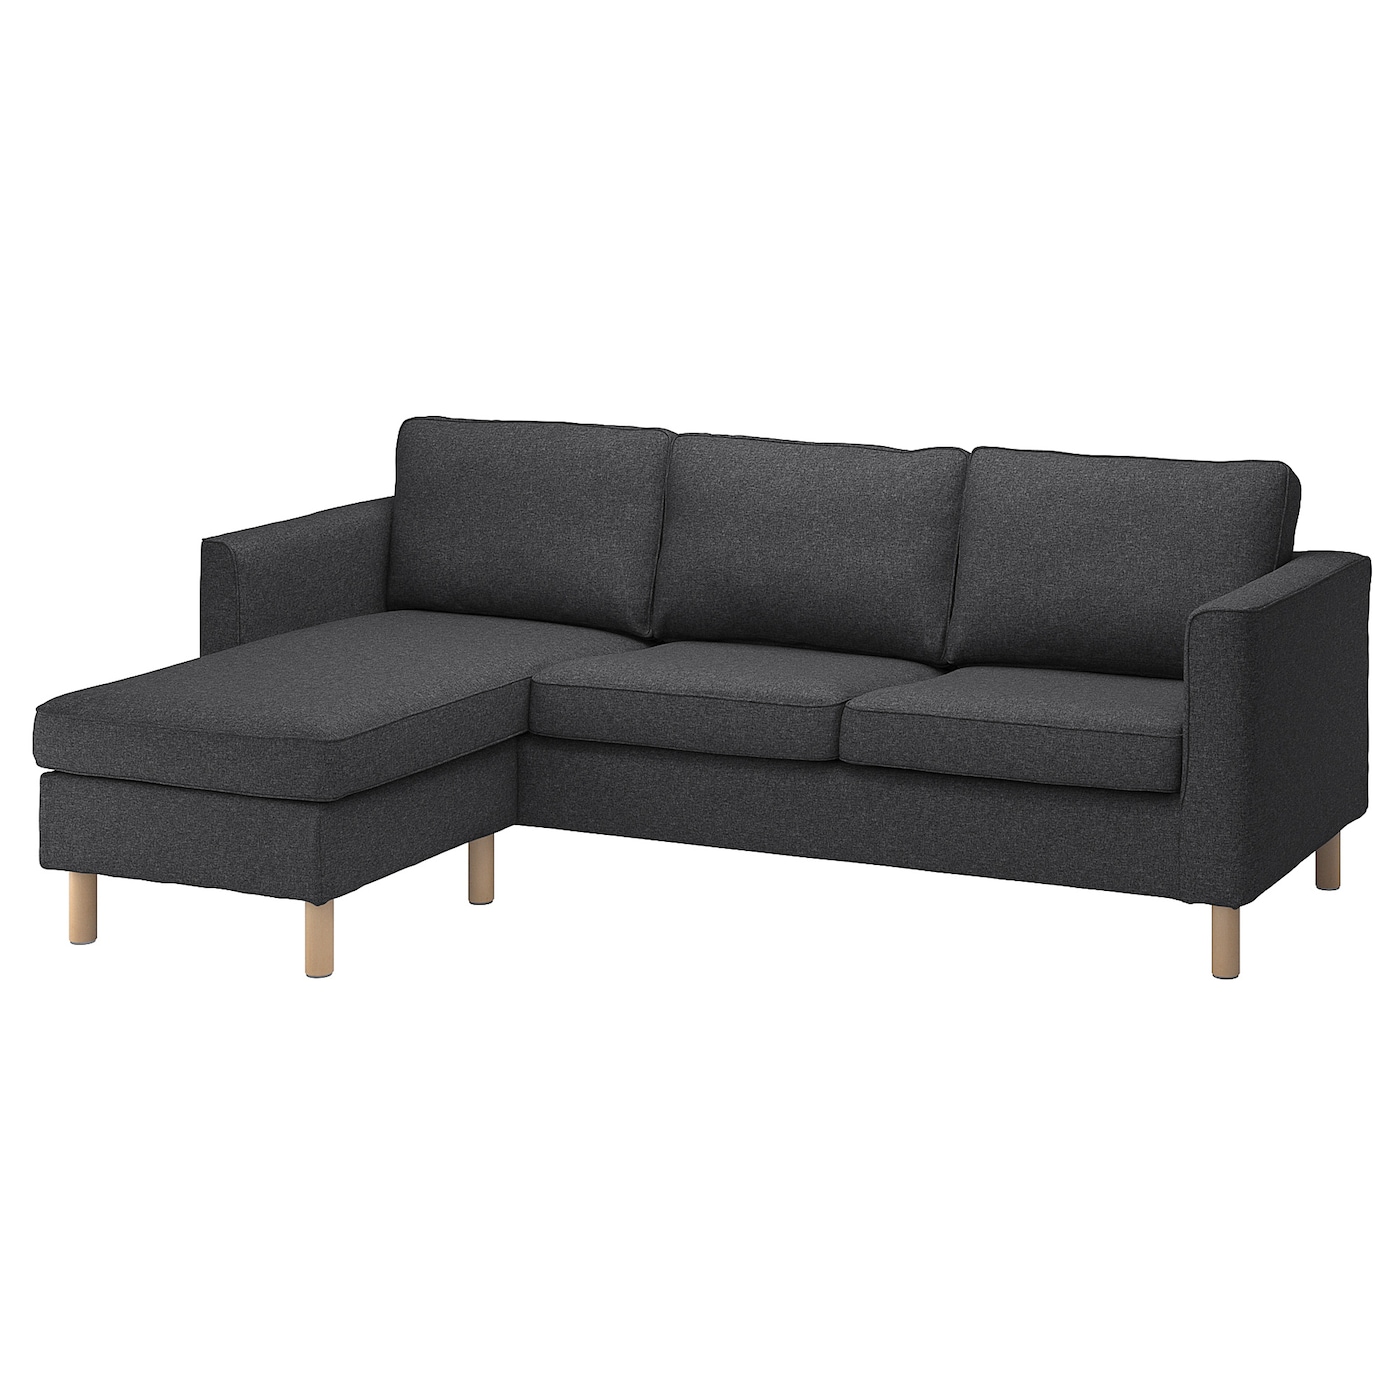 4 шт комод комод шкаф диван сменные ножки диван подставка для кресла ножки деревянные ножки для стола ПЭРУП 3-местный диван + диван, Гуннаред темно-серый PÄRUP IKEA